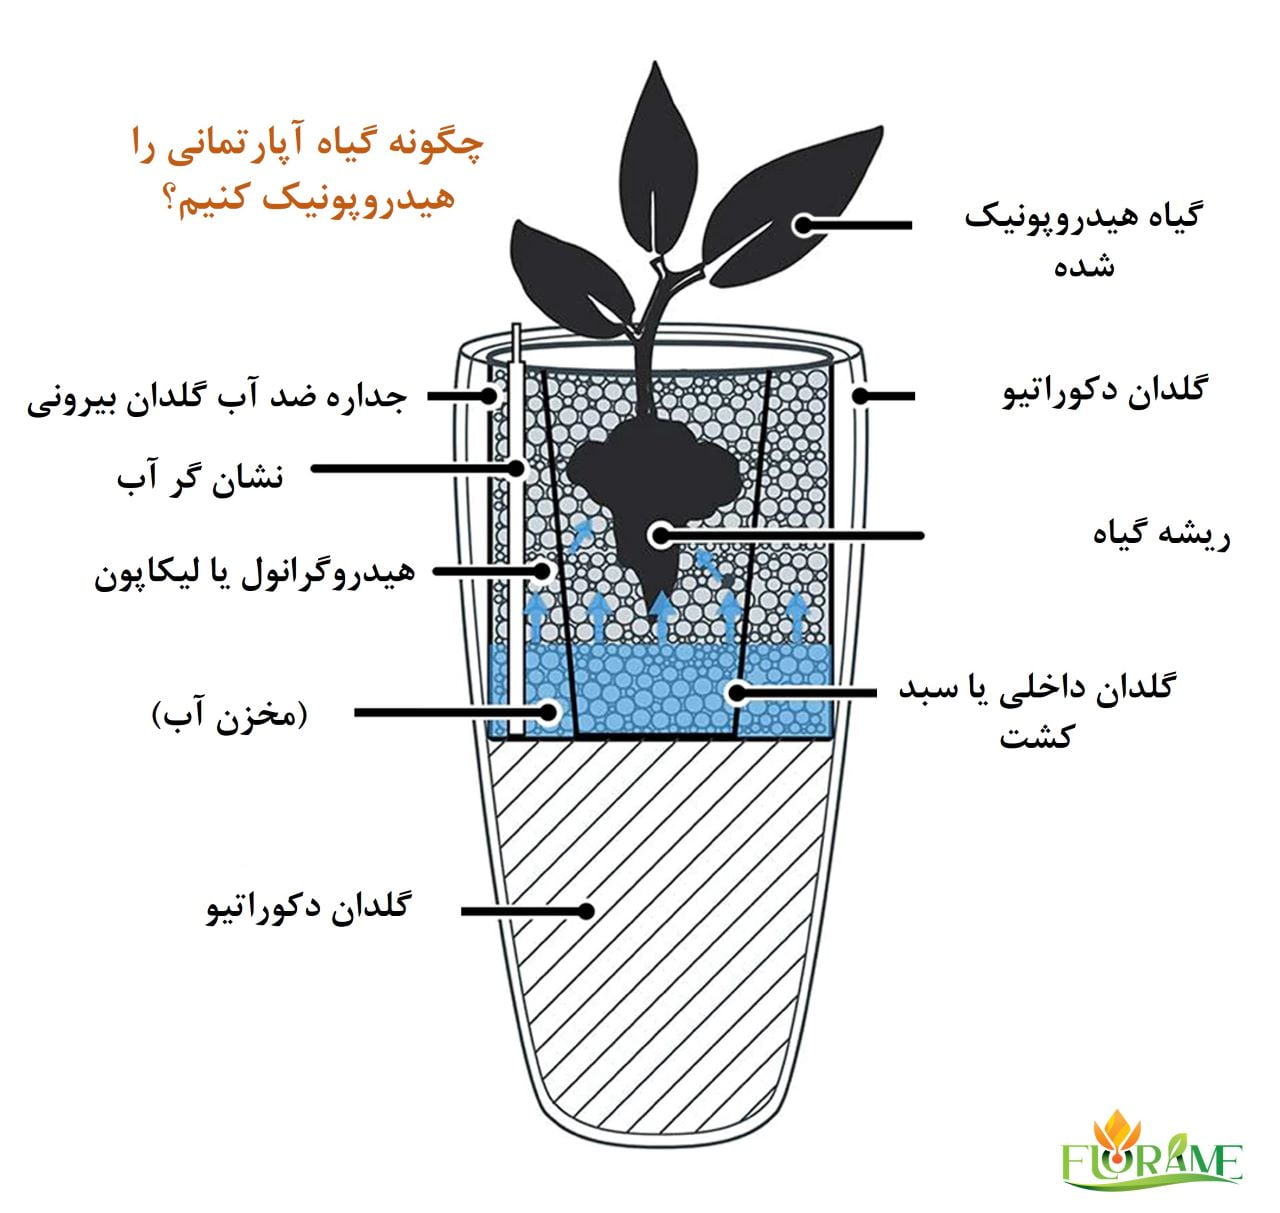 هیدروپونیک کردن گیاهان آپارتمانی